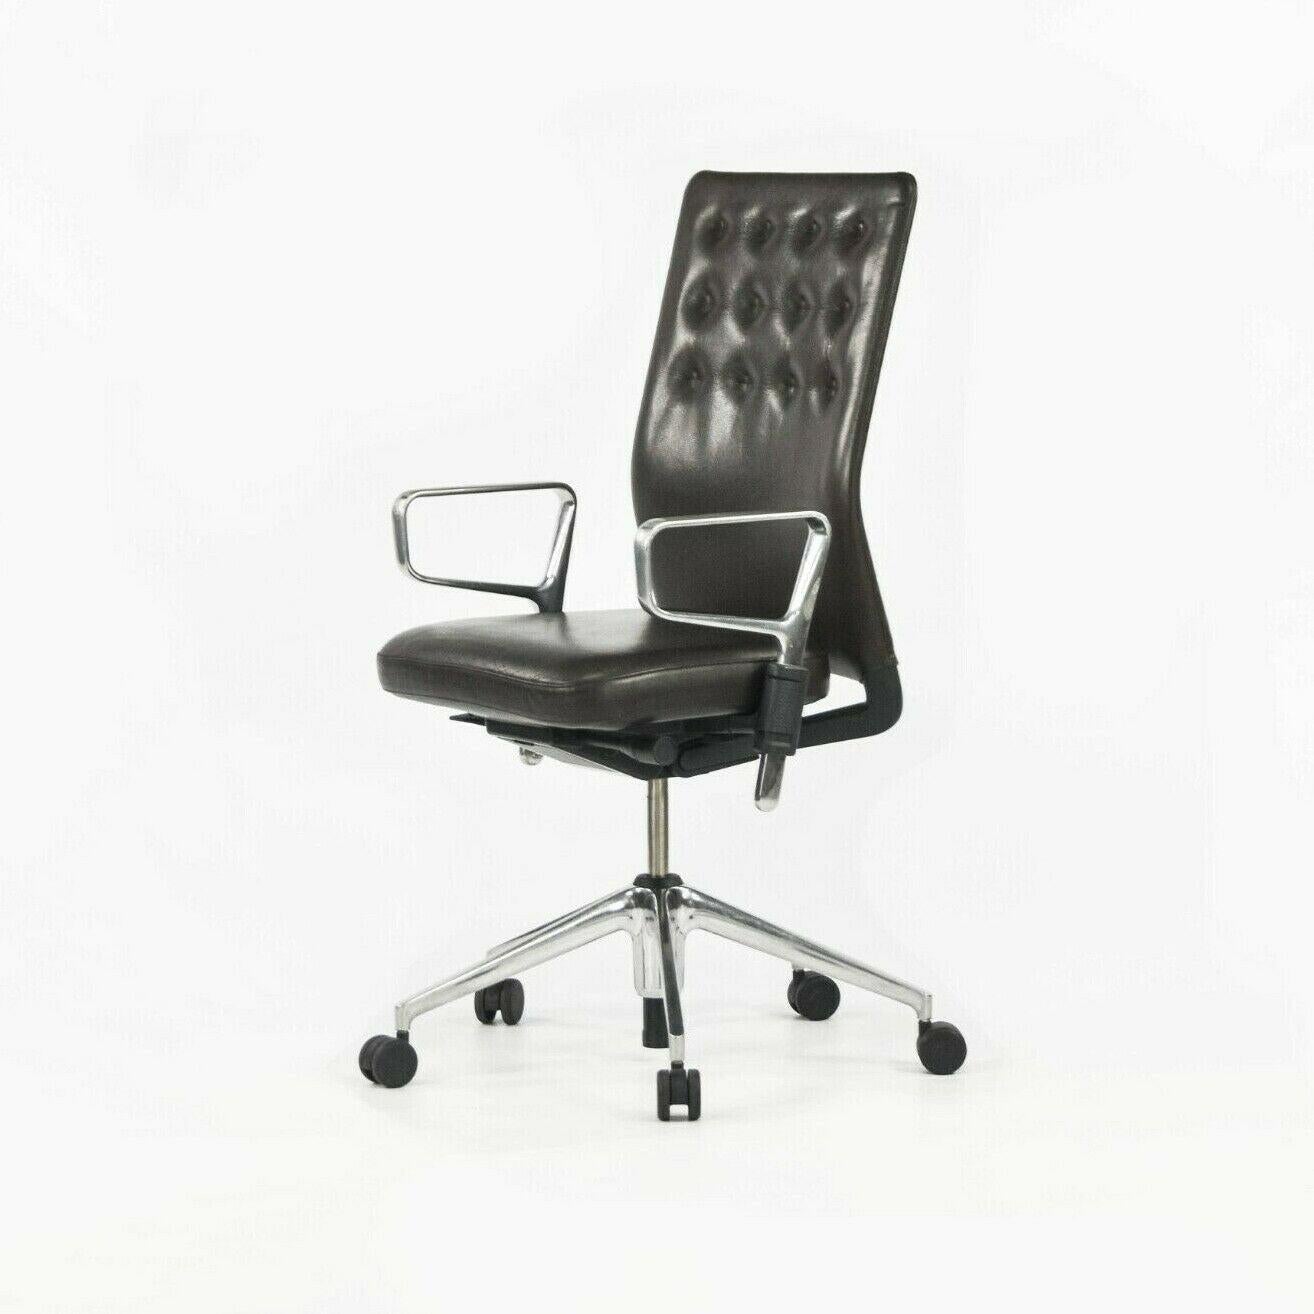 Zum Verkauf angeboten wird ein einzelner (mehrere Stühle sind verfügbar, aber der angegebene Preis ist für einen Stuhl) ID Trim Stuhl in sehr dunkelbraunem Leder, entworfen von Antonio Citterio, produziert von Vitra im Jahr 2012. Dies ist ein